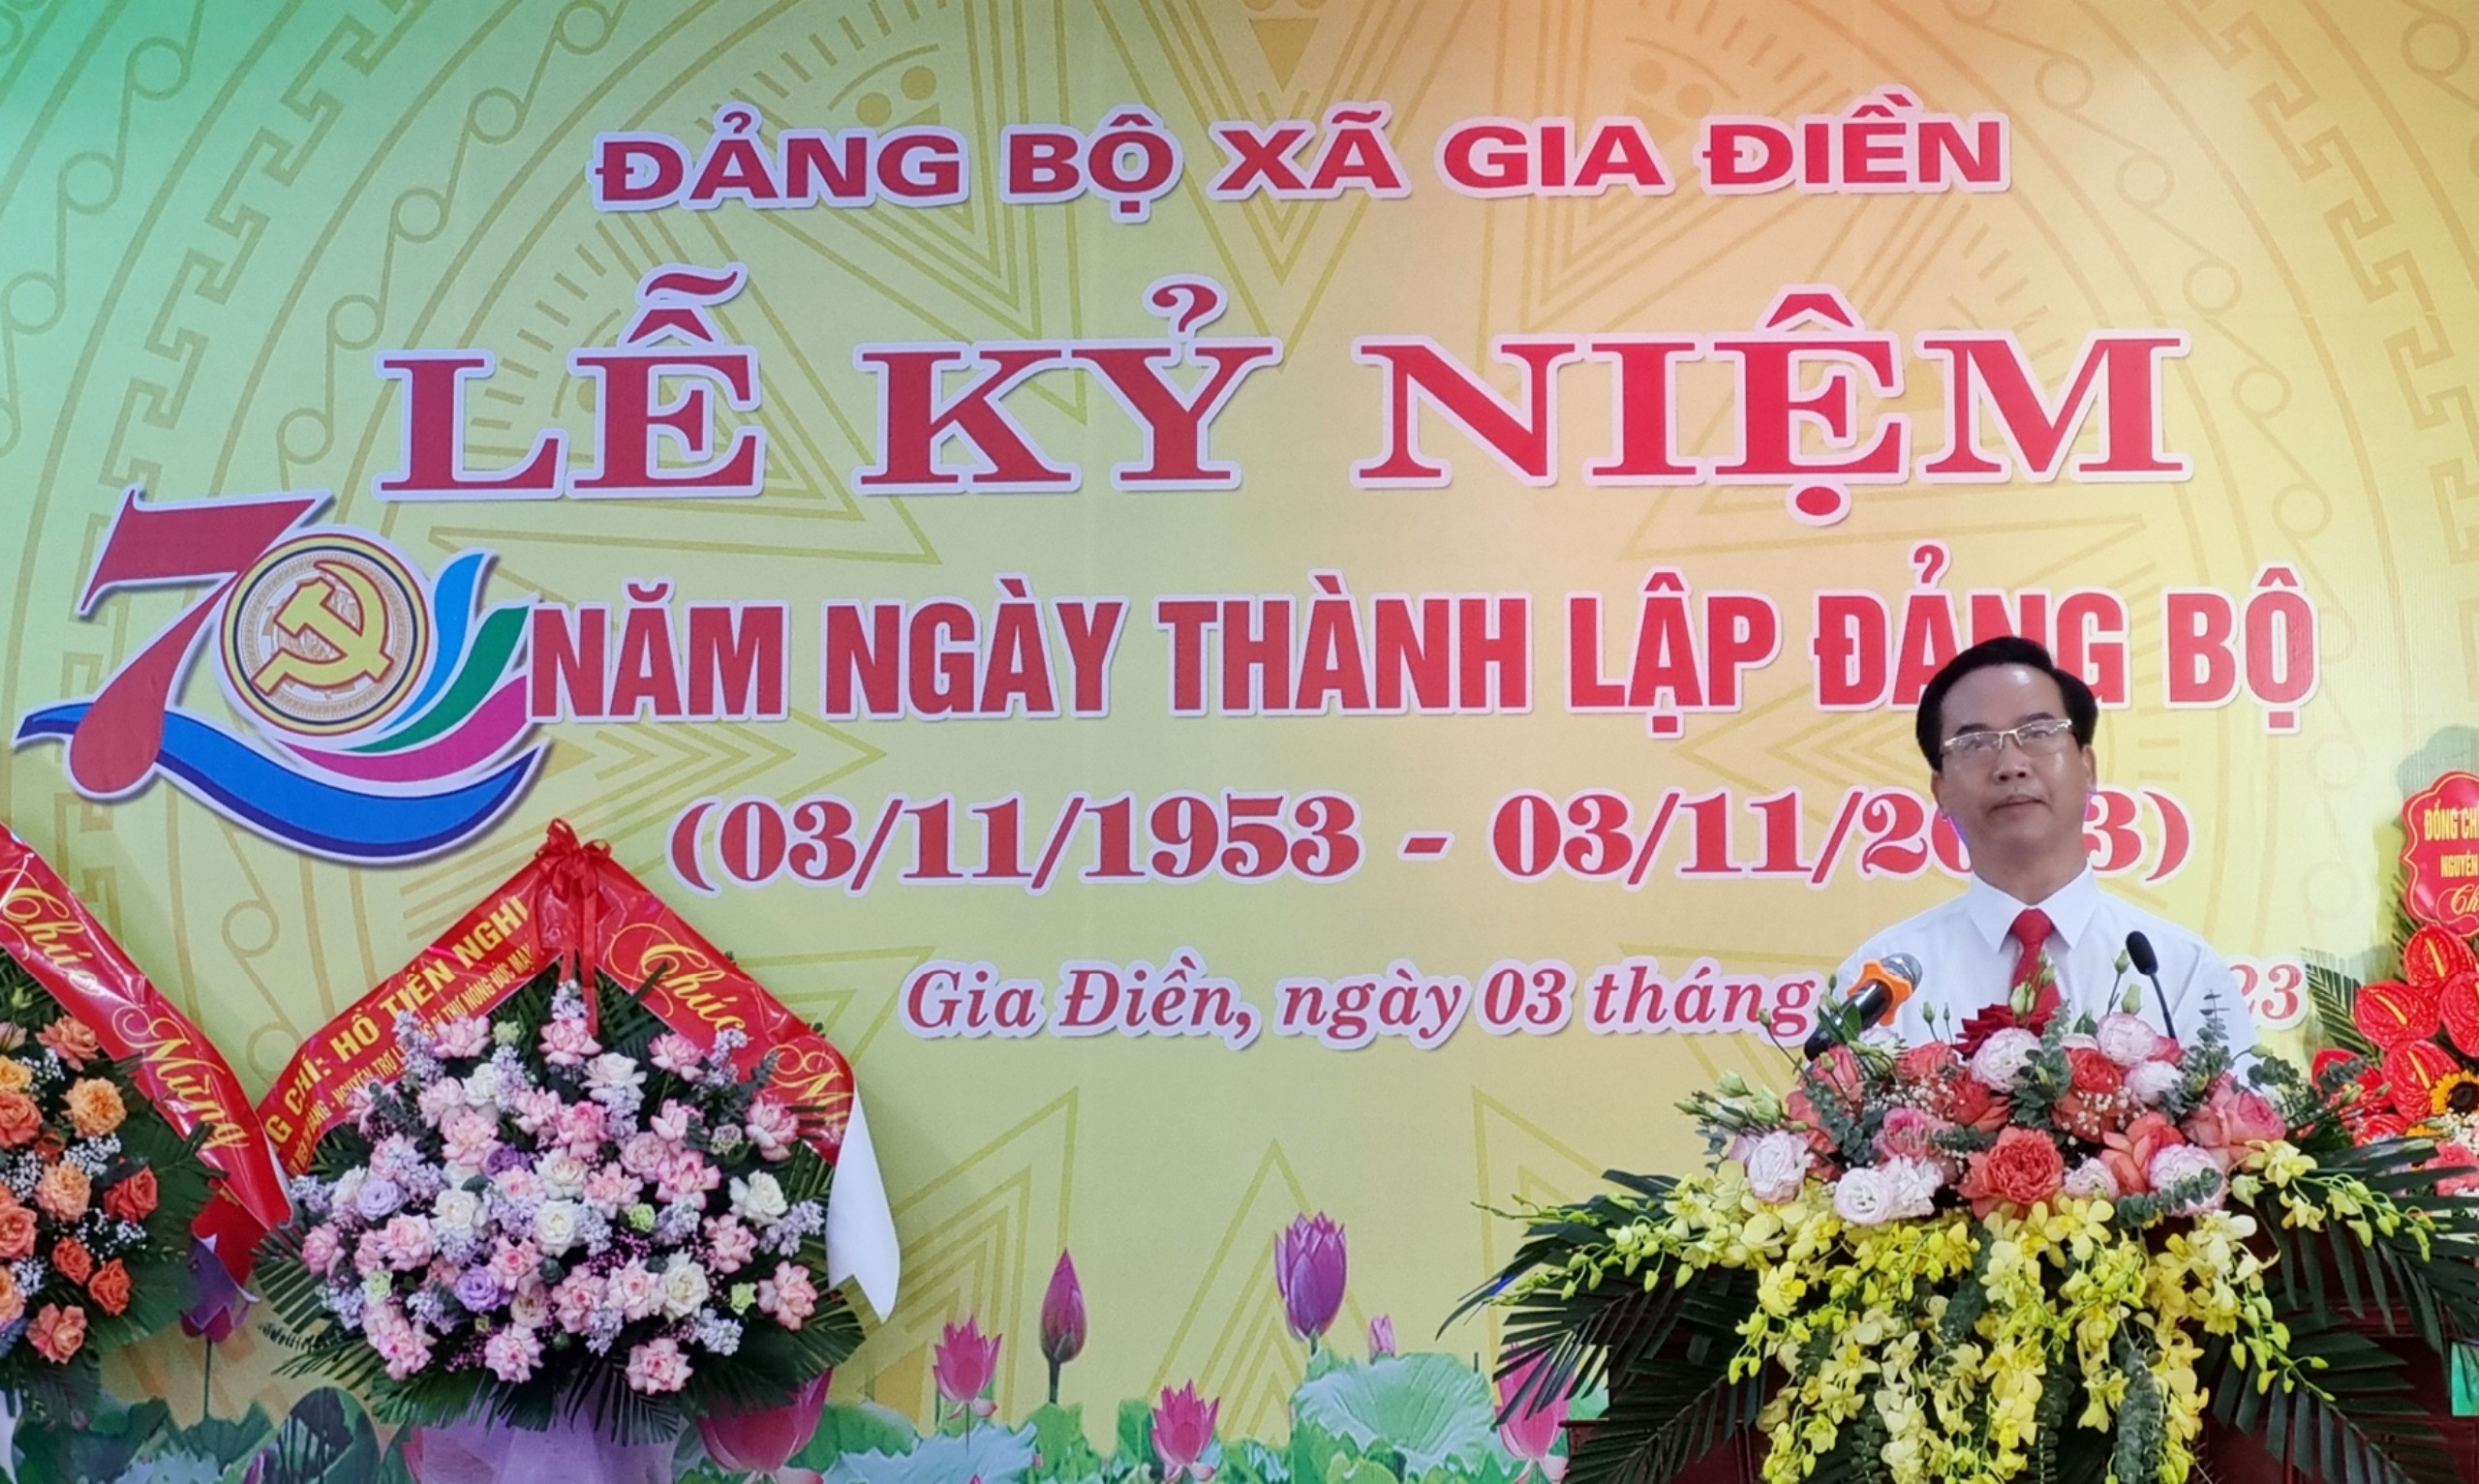 Chủ tịch Liên hiệp các Hội Văn học nghệ thuật Việt Nam dự Lễ kỷ niệm 70 năm ngày thành lập Đảng bộ xã Gia Điền - 3